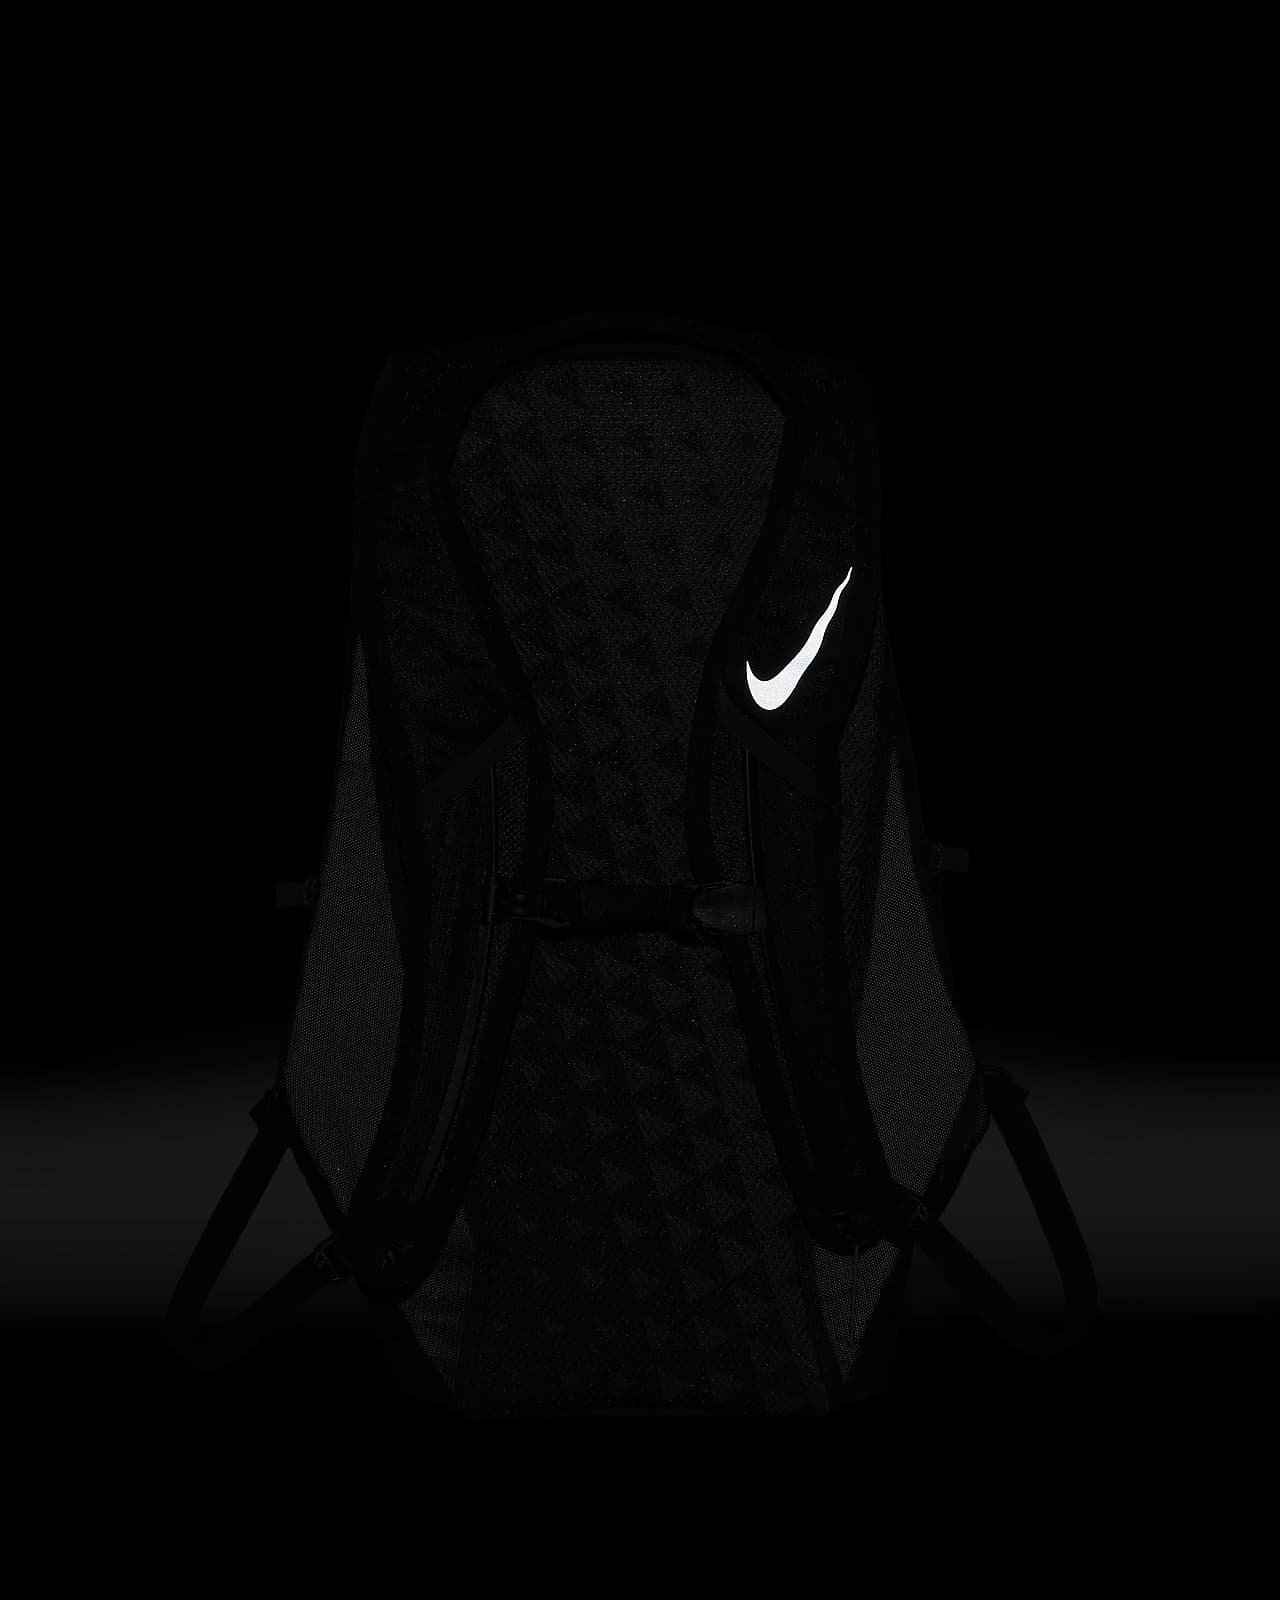 Nike Run Backpack. Nike.com